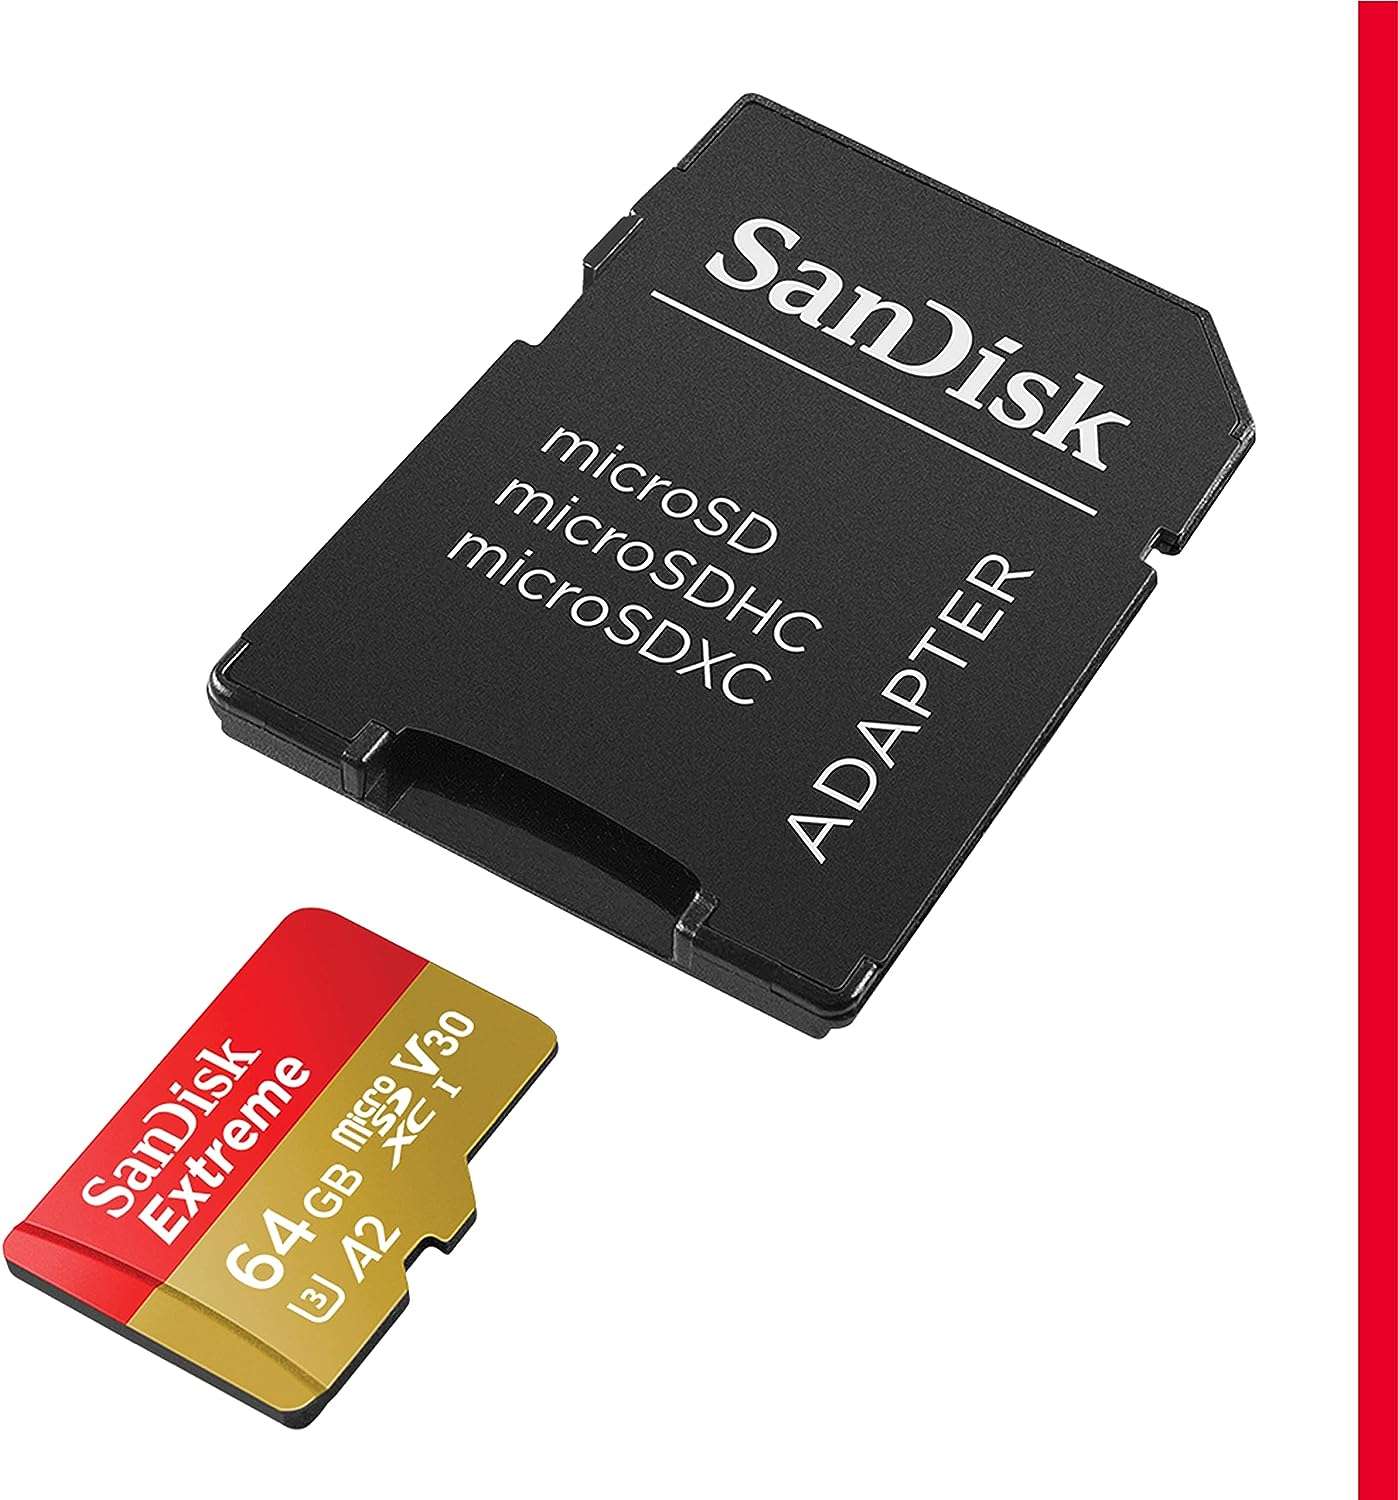 SanDisk Extreme microSDXC 064 GB SD Kart + Adaptör